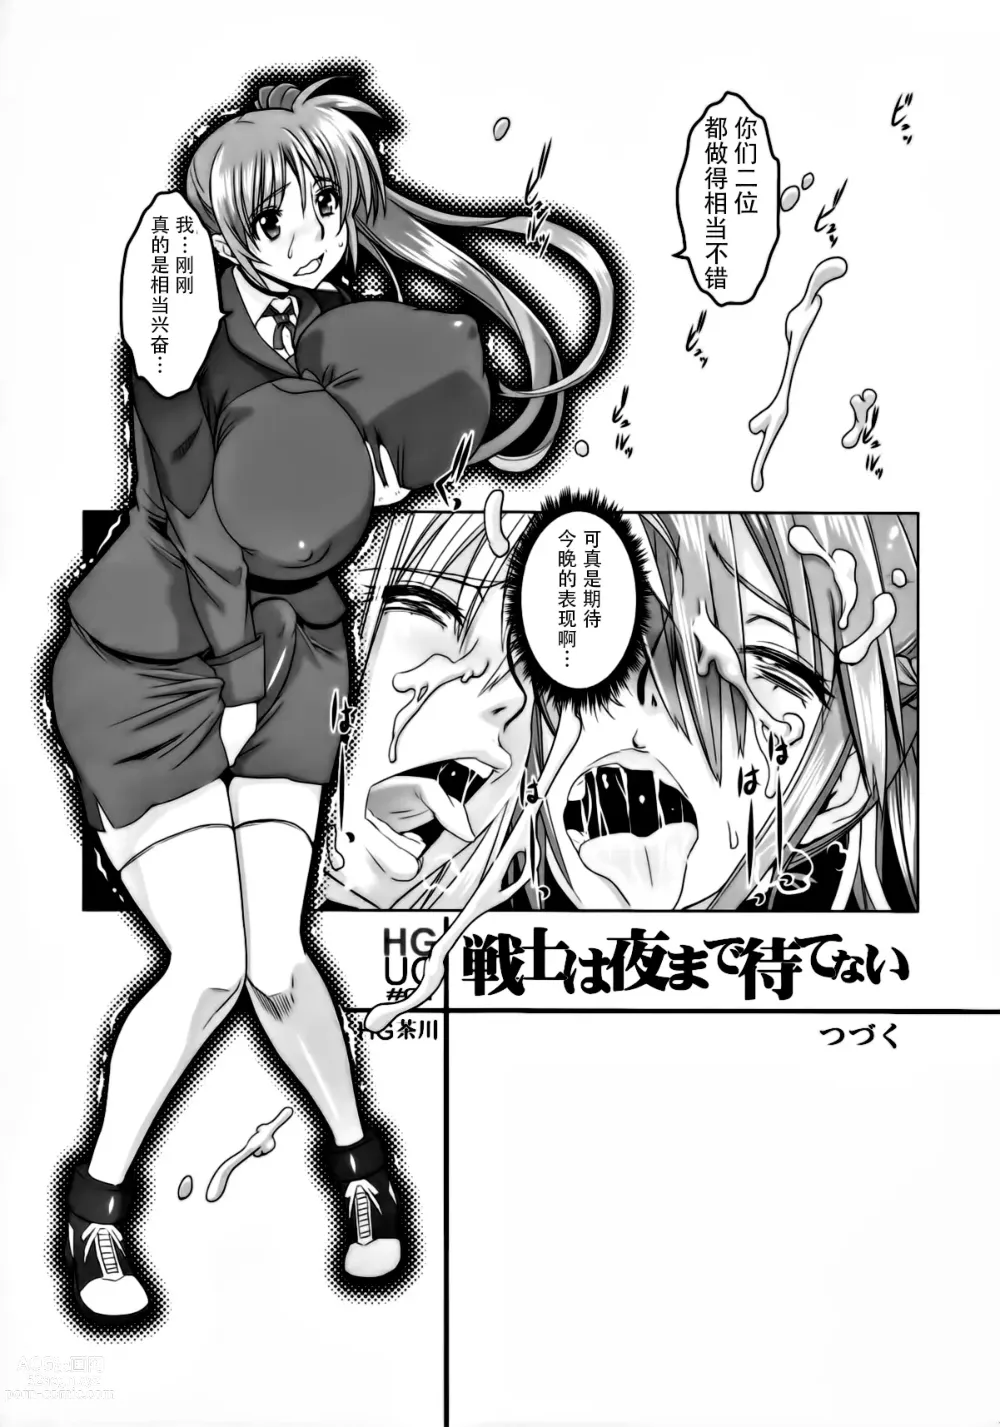 Page 19 of doujinshi HGUC#01::Senshi ha Yoru Made Mate Nai